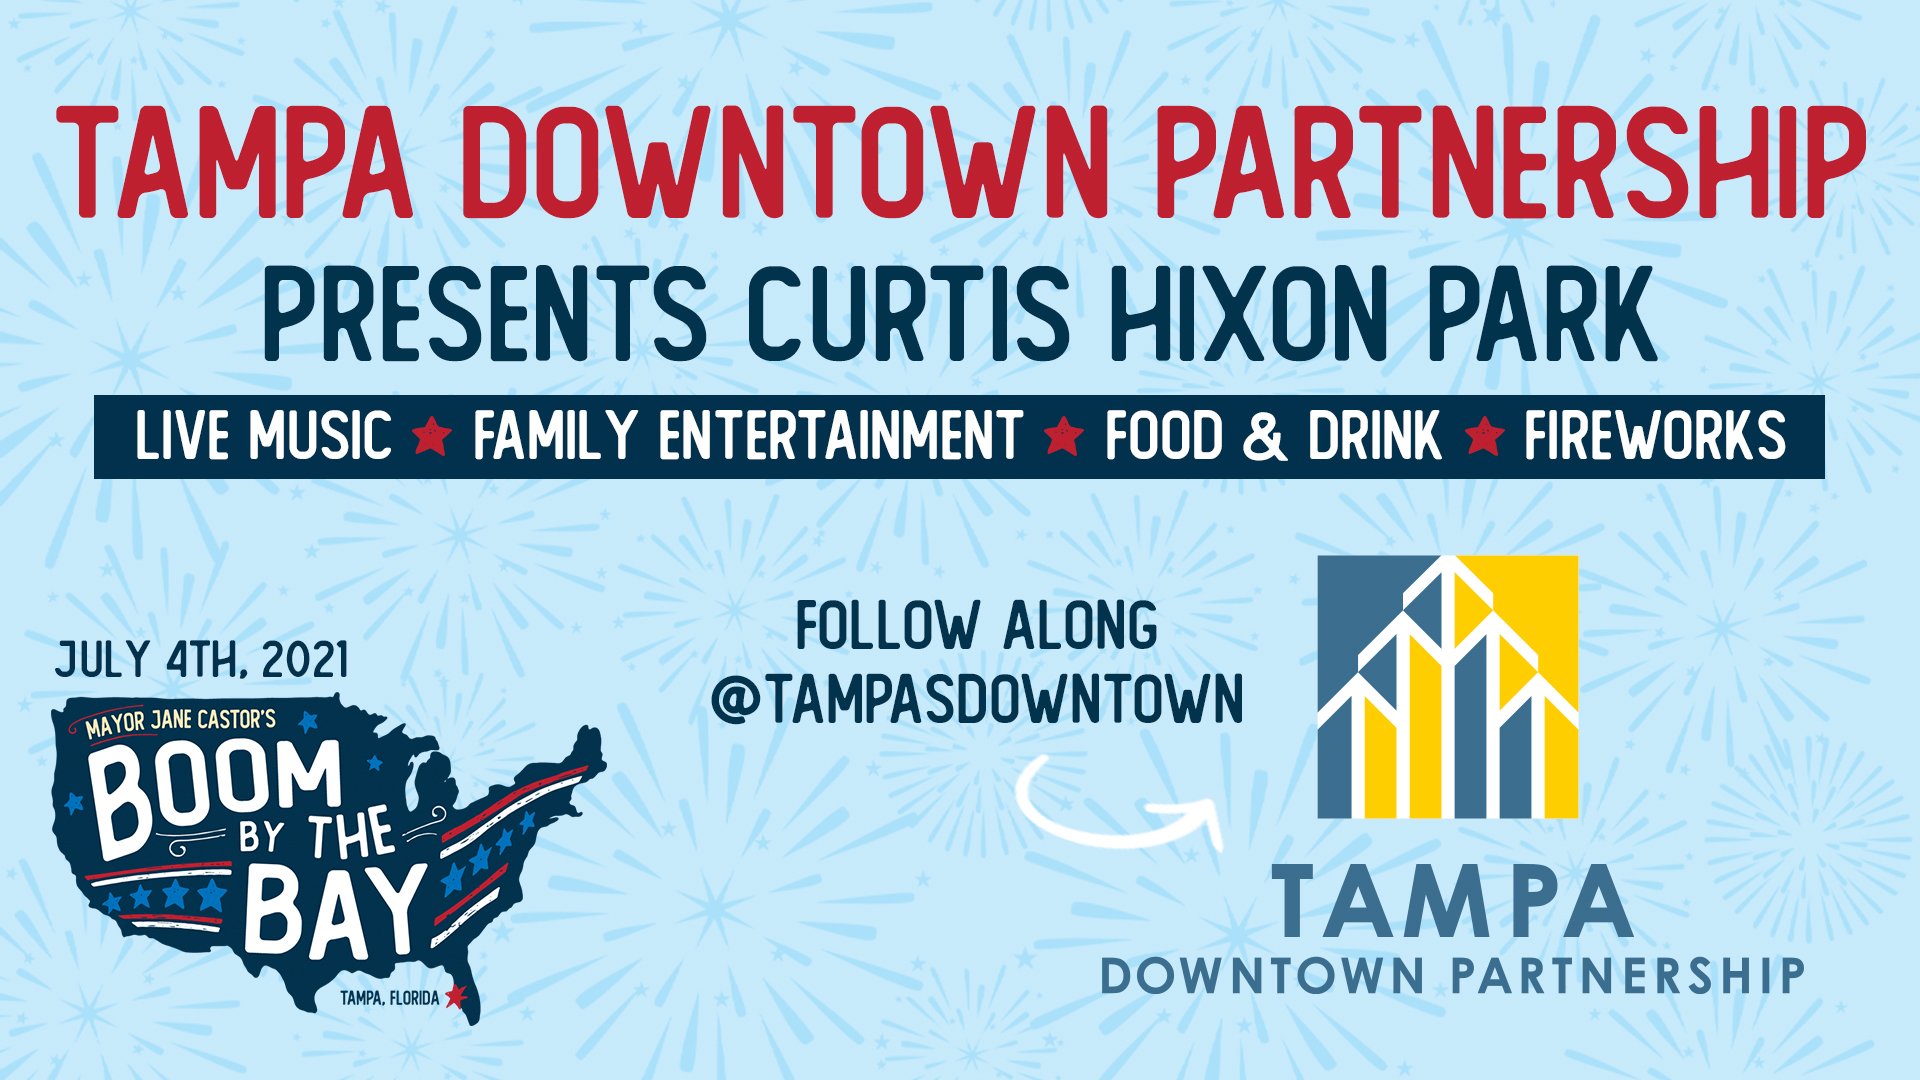 Tampa-Downtown-Partnership-at-Curtis-Hixon-Park.jpg